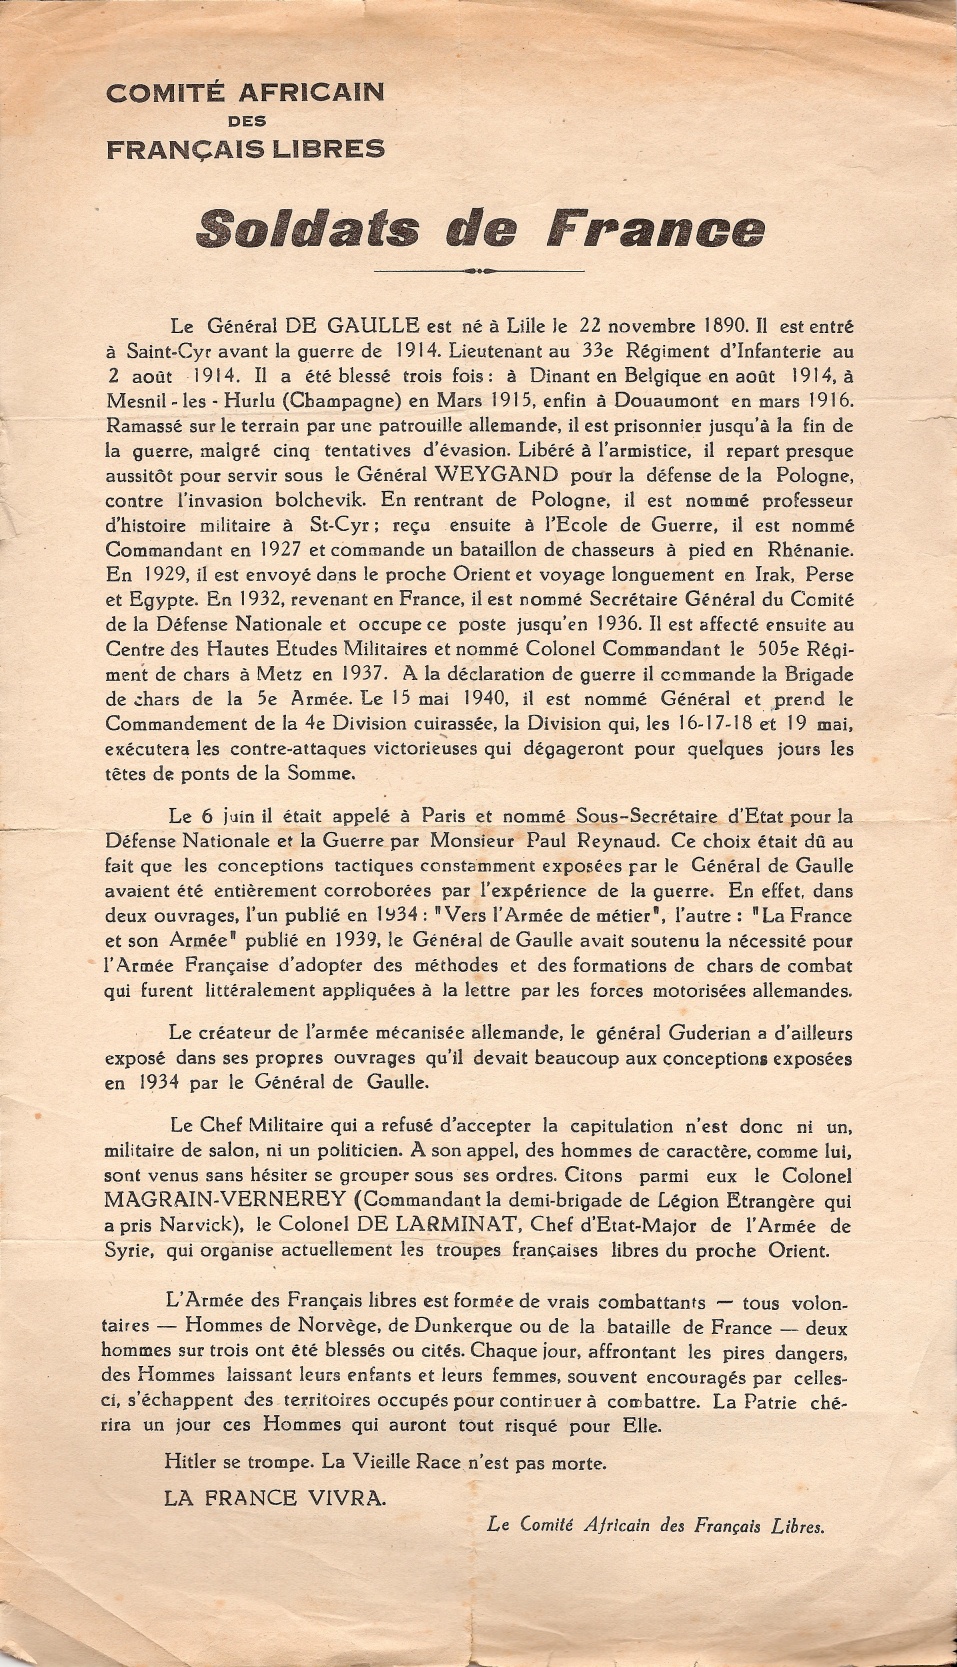 Soldats de France, par le Comité africain des Français libres (septembre 1940)